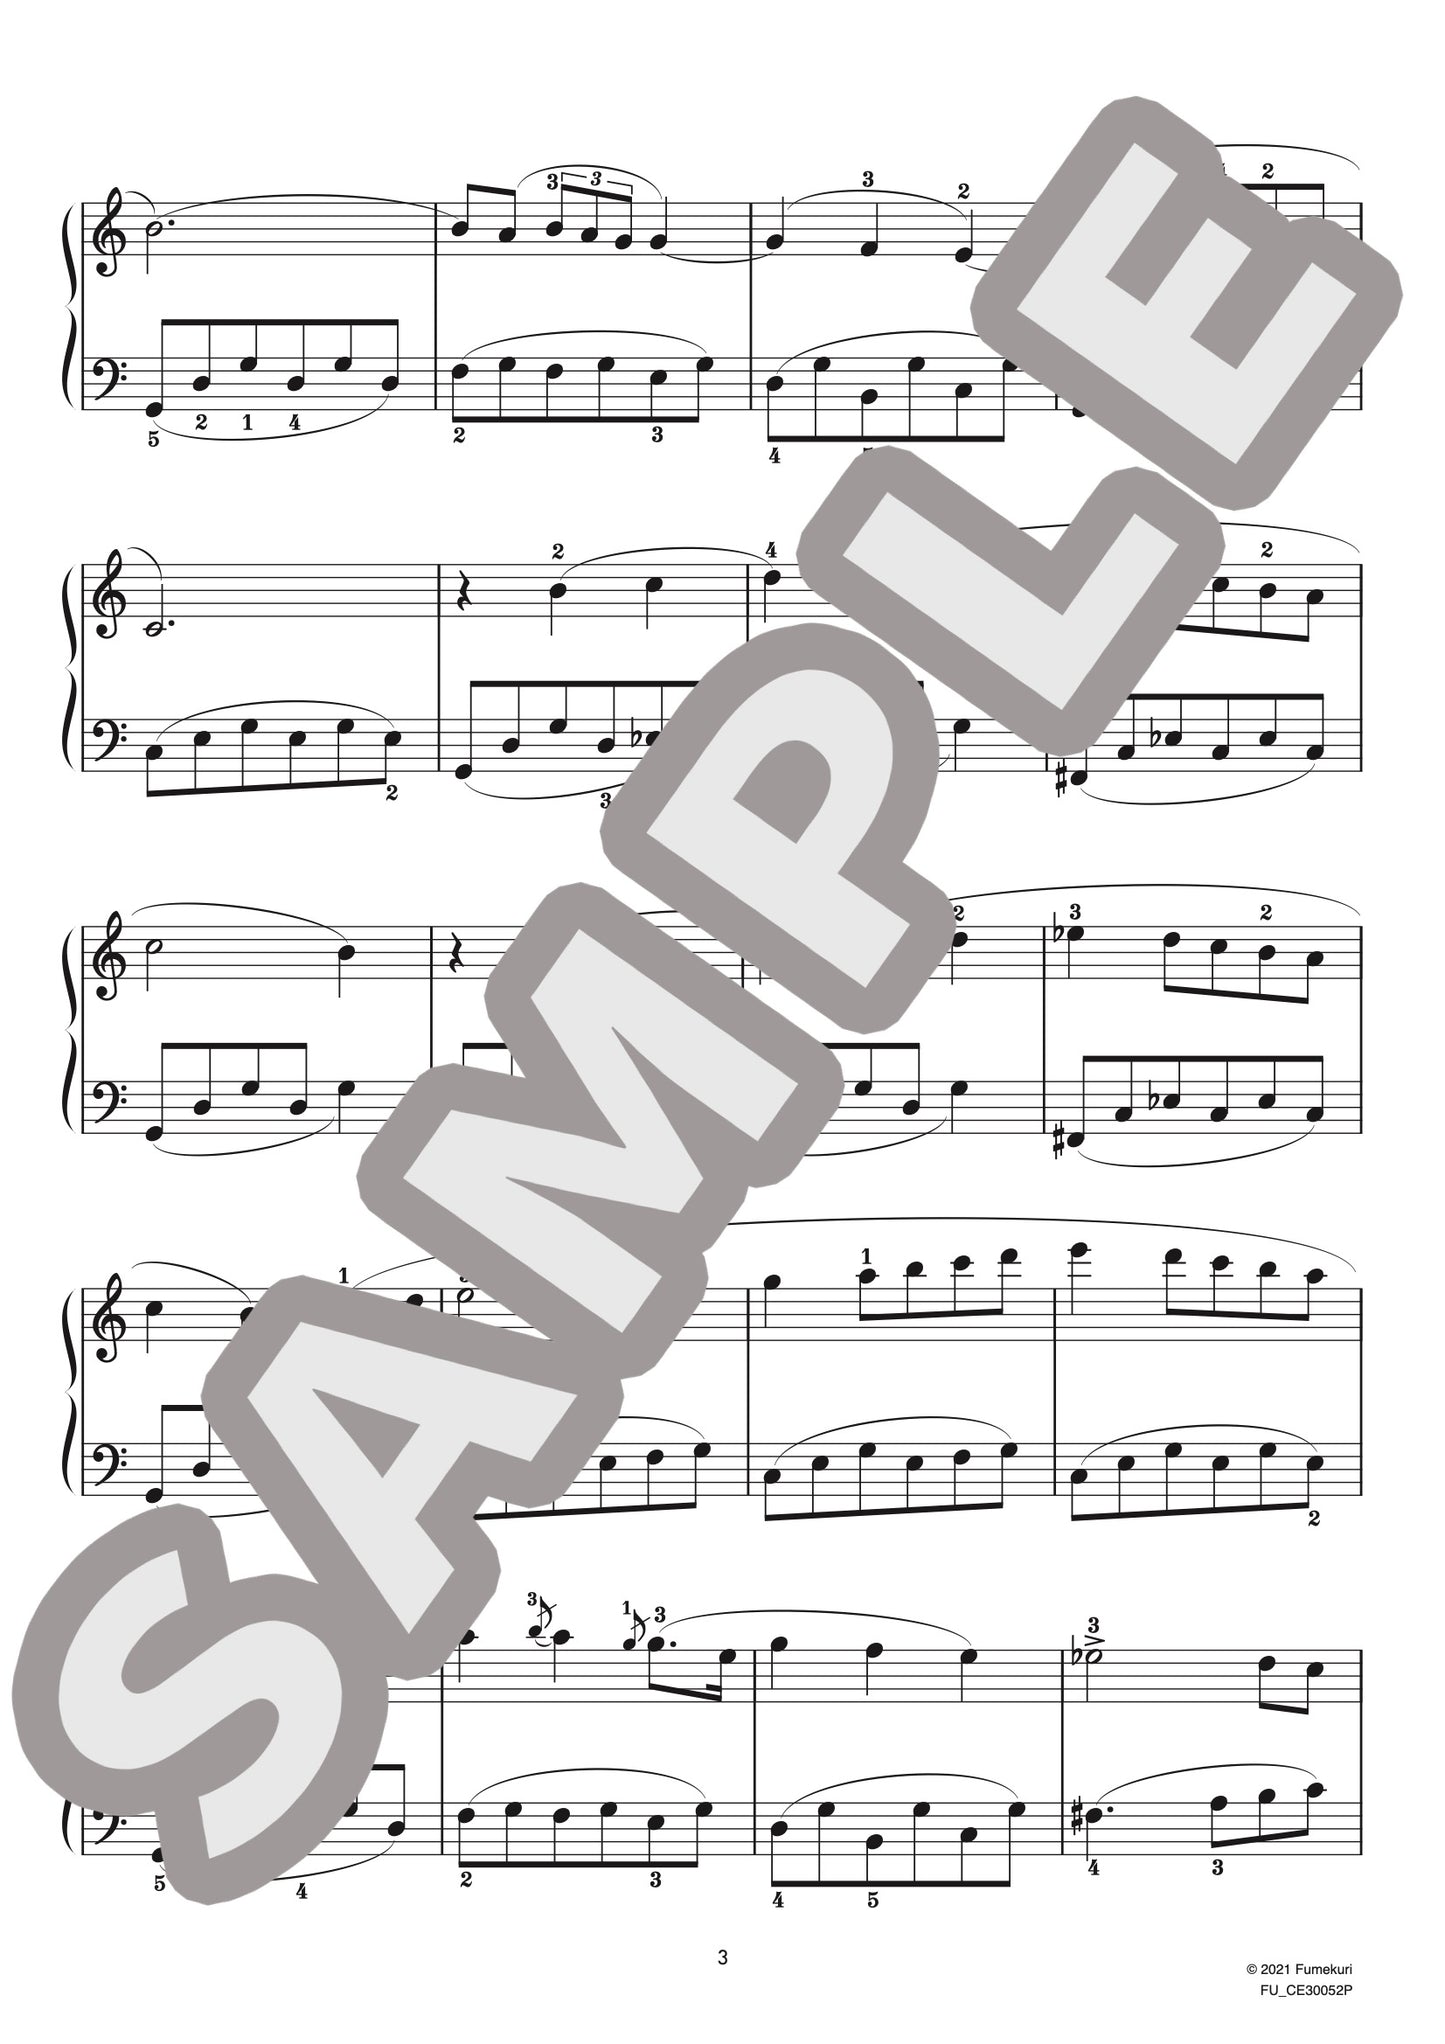 ピアノ協奏曲 第1番 第1楽章（フレデリック・ショパン) / クラシック・オリジナル楽曲【初級】